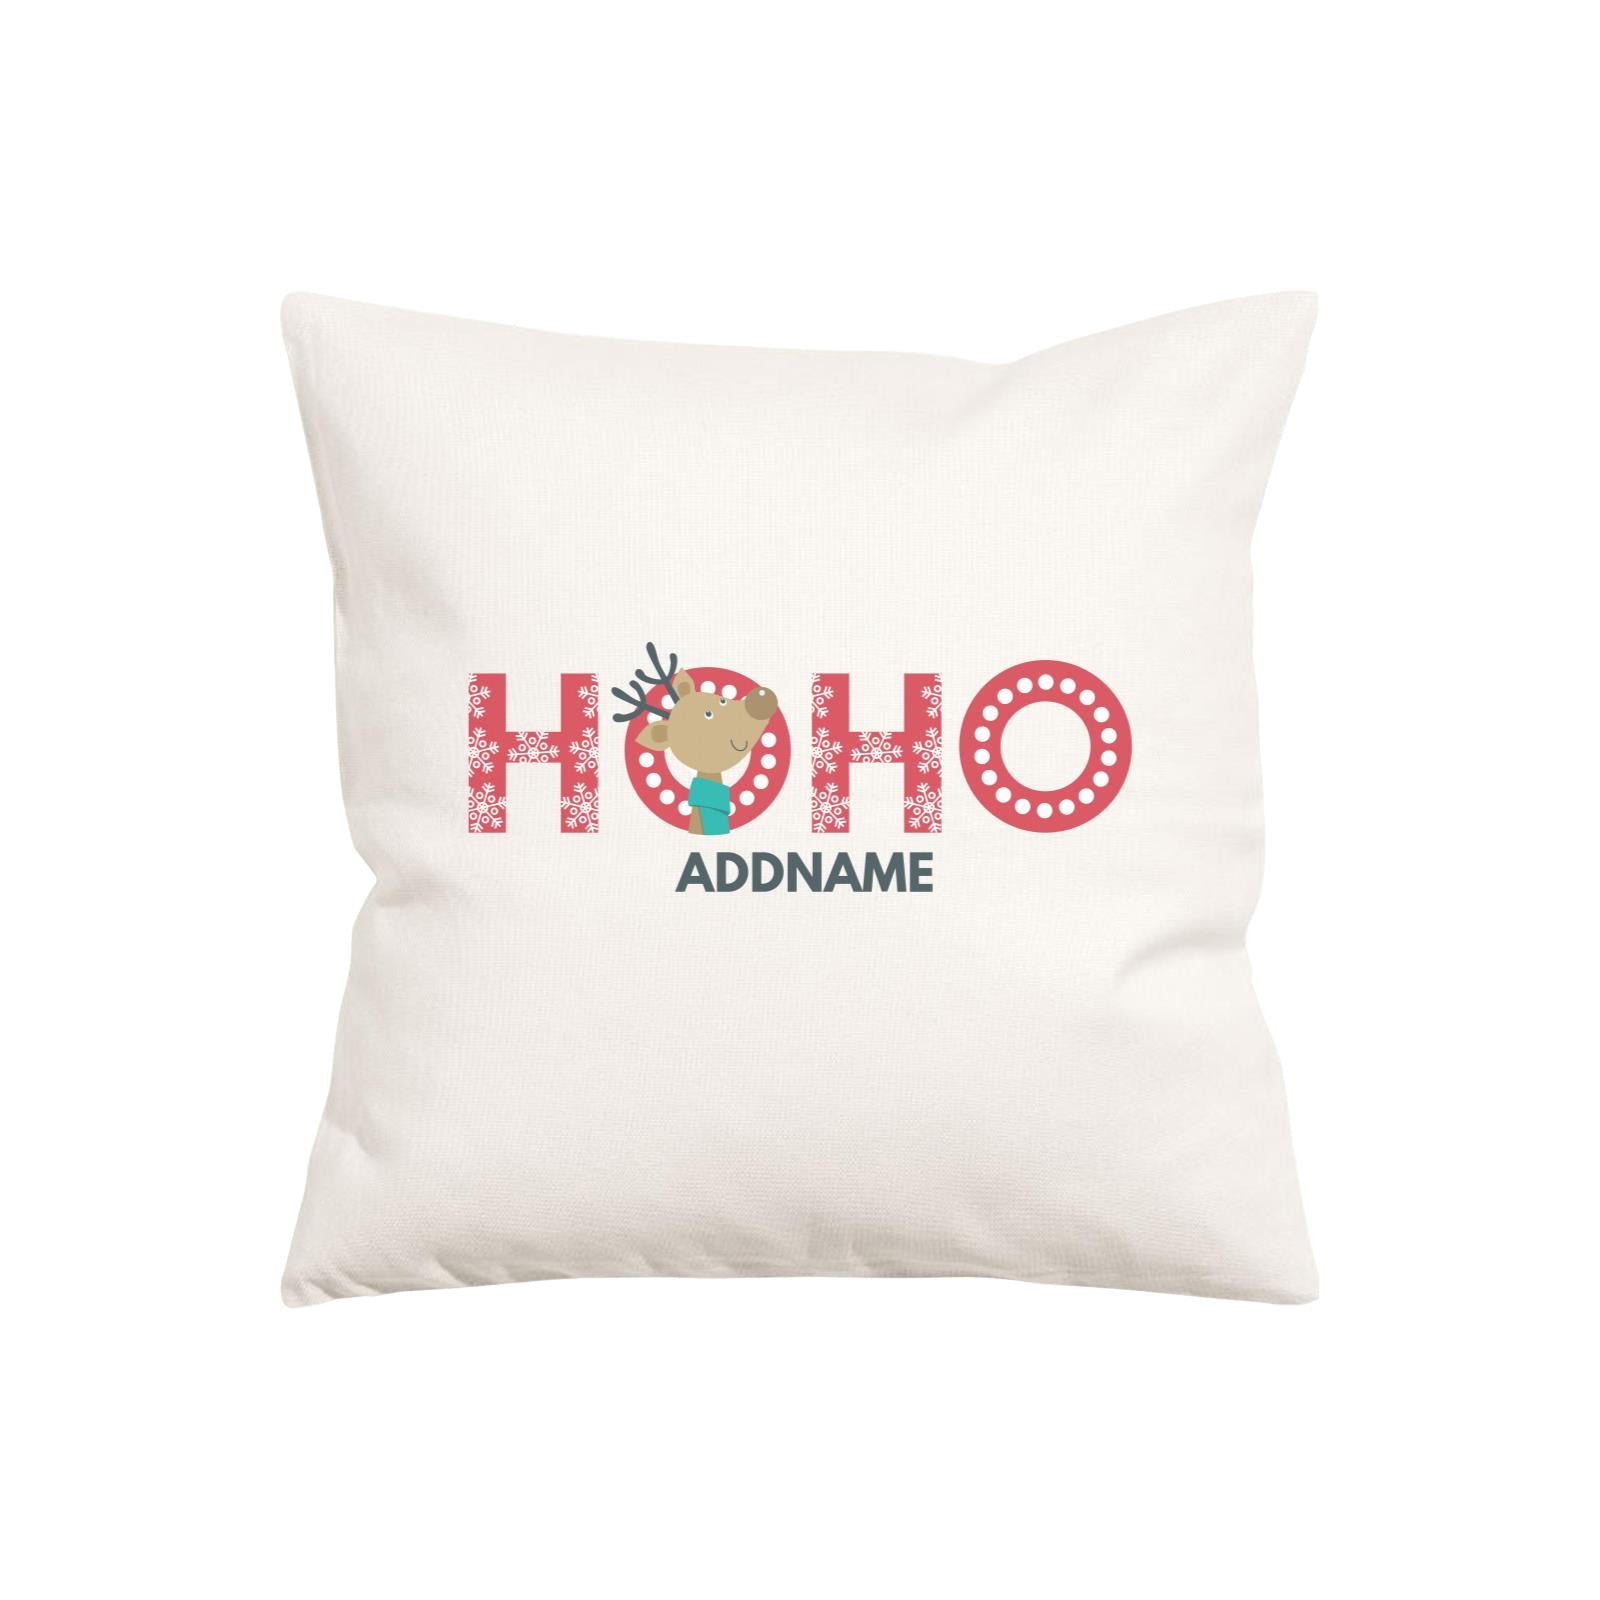 Xmas HoHo Reindeer Pillow Pillow Cushion